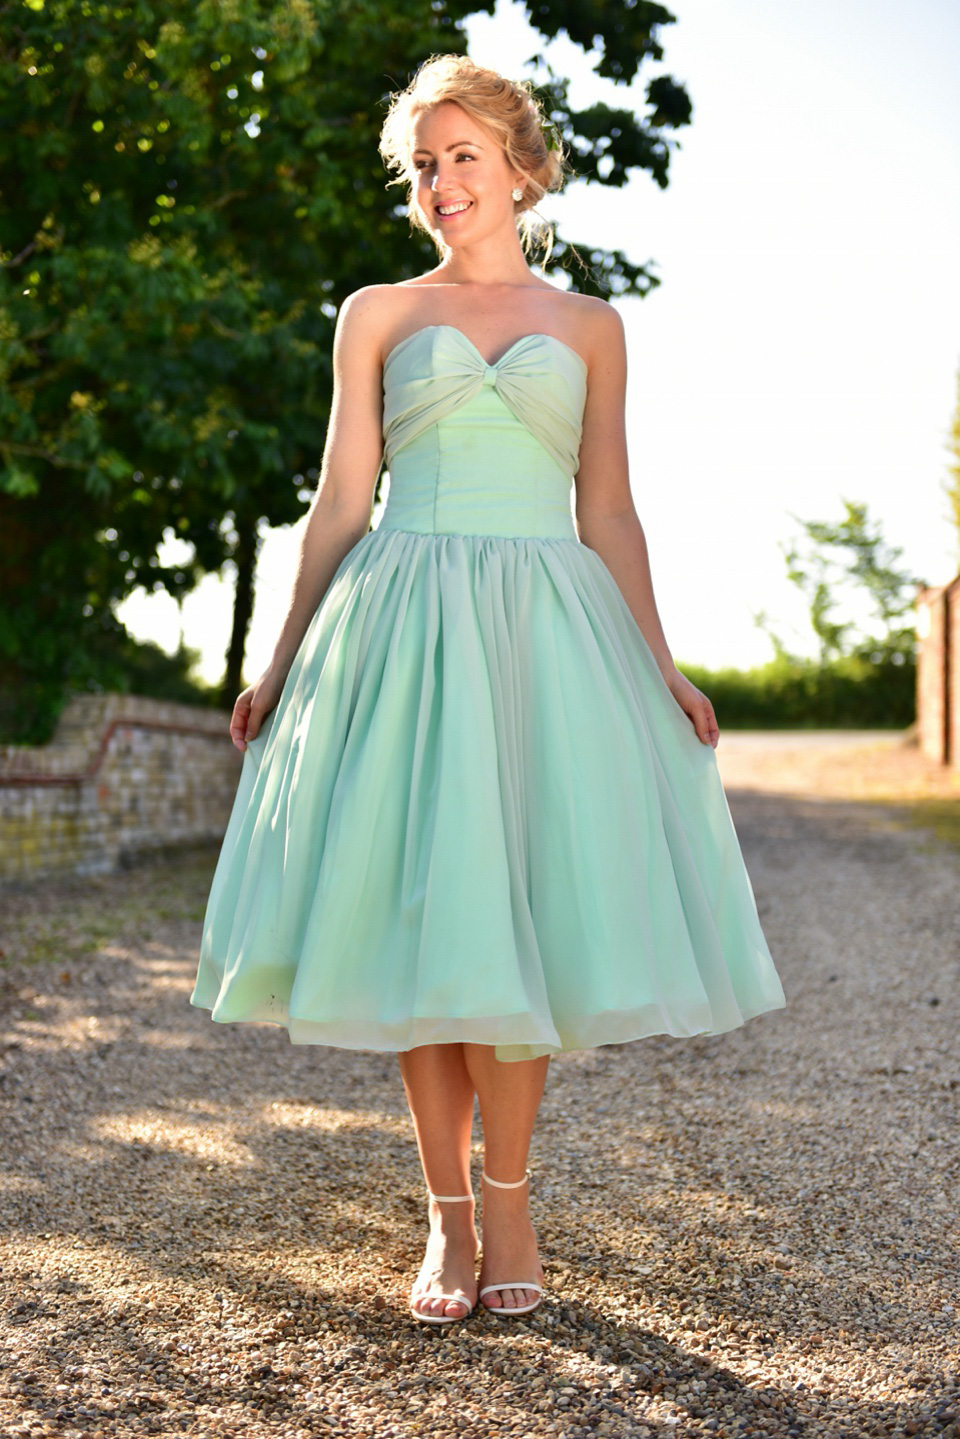 Elegance 50s – Vintage Inspired Gowns For Brides & Bridesmaids. Visit elegance50s.co.uk.